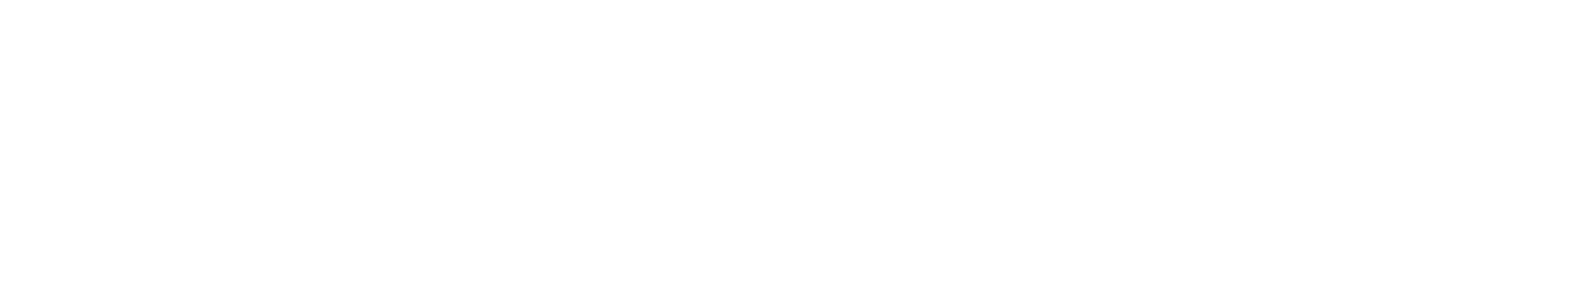 CrowdStrike logo large for dark backgrounds (transparent PNG)